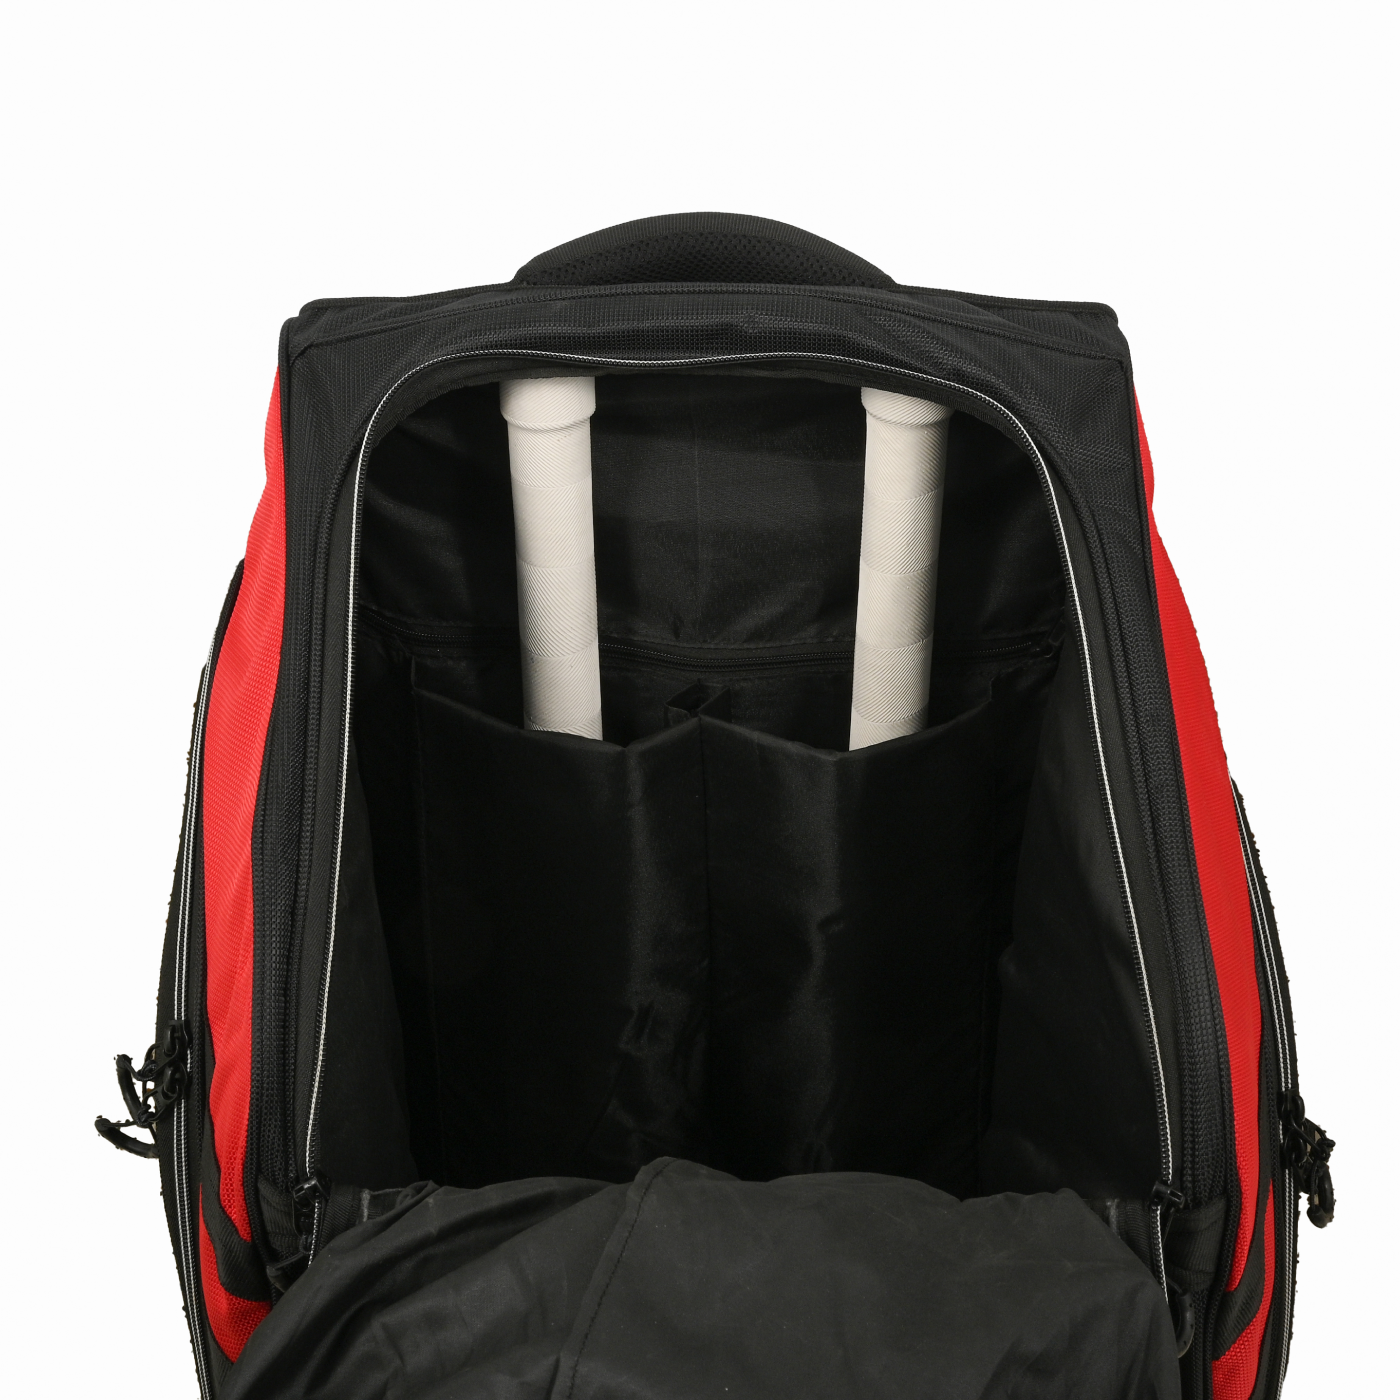 Hammer Beserker 1.0 Duffle Cricket Kit Bag